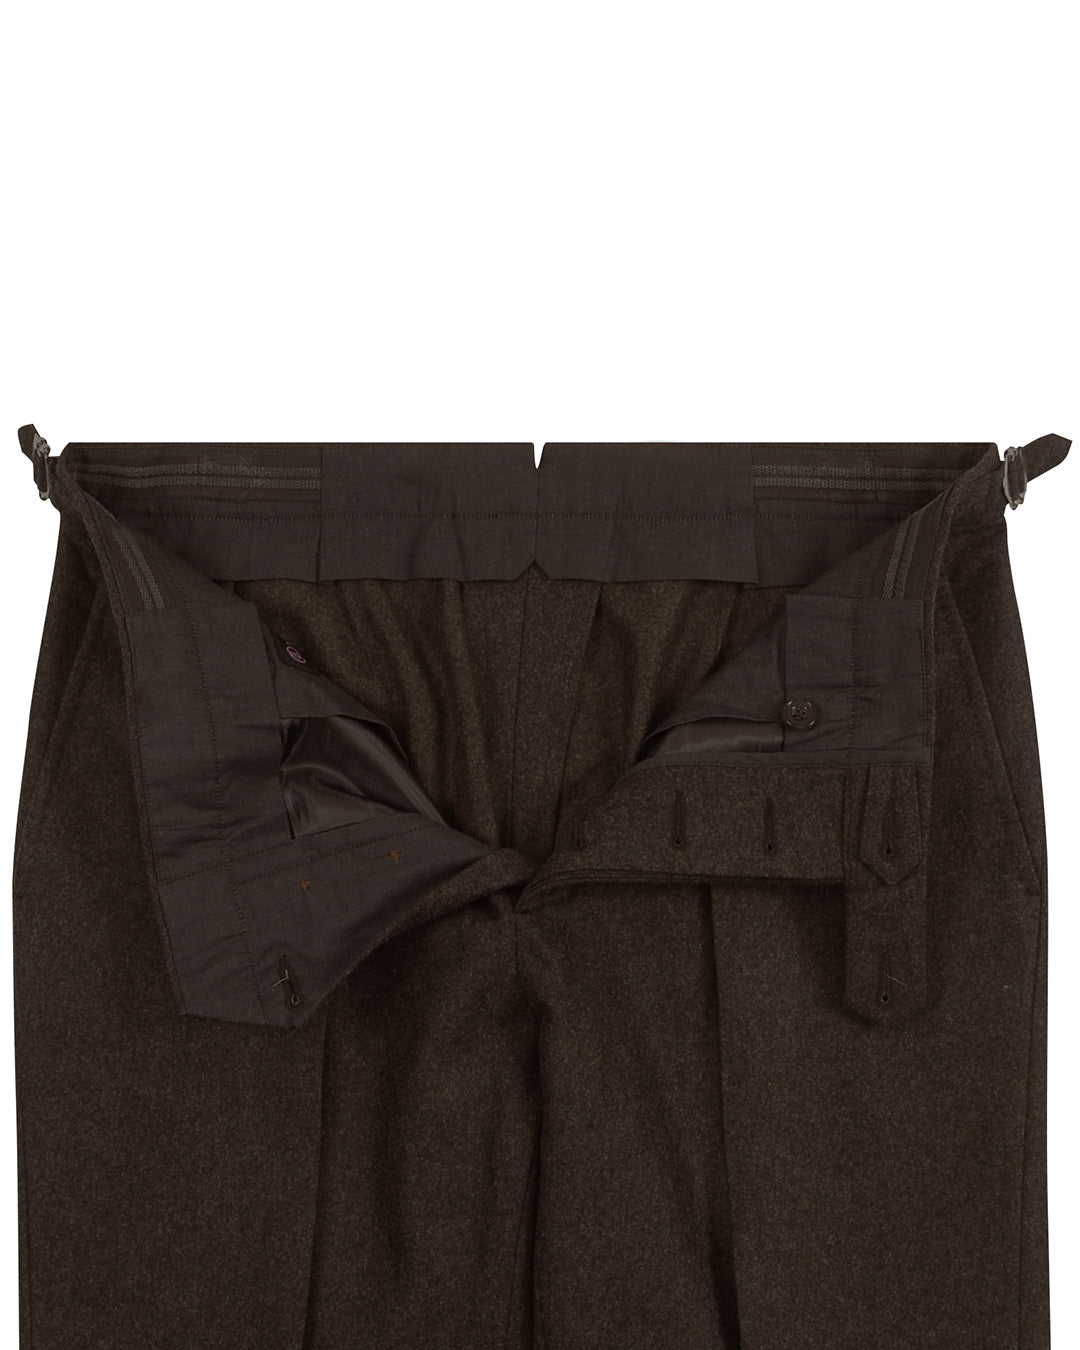 VBC 100% Wool: Dark Brown Flannel